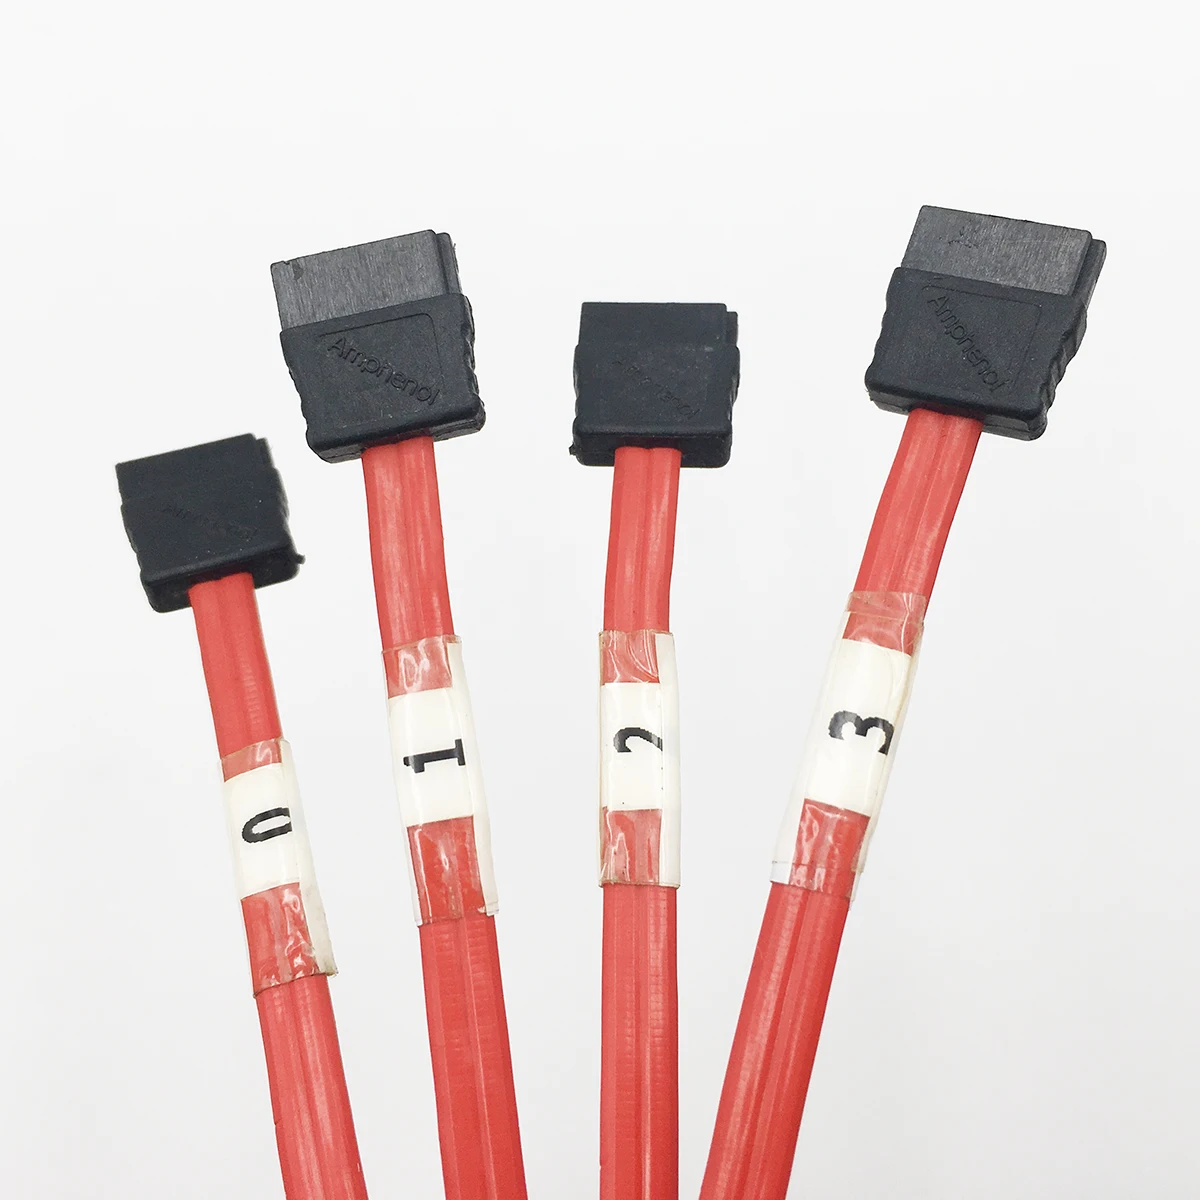 1 шт. кабель Serial ATA 4* SATA для SFF-8087 Mini SAS 36Pin обратный пробой кабель красный 50 см